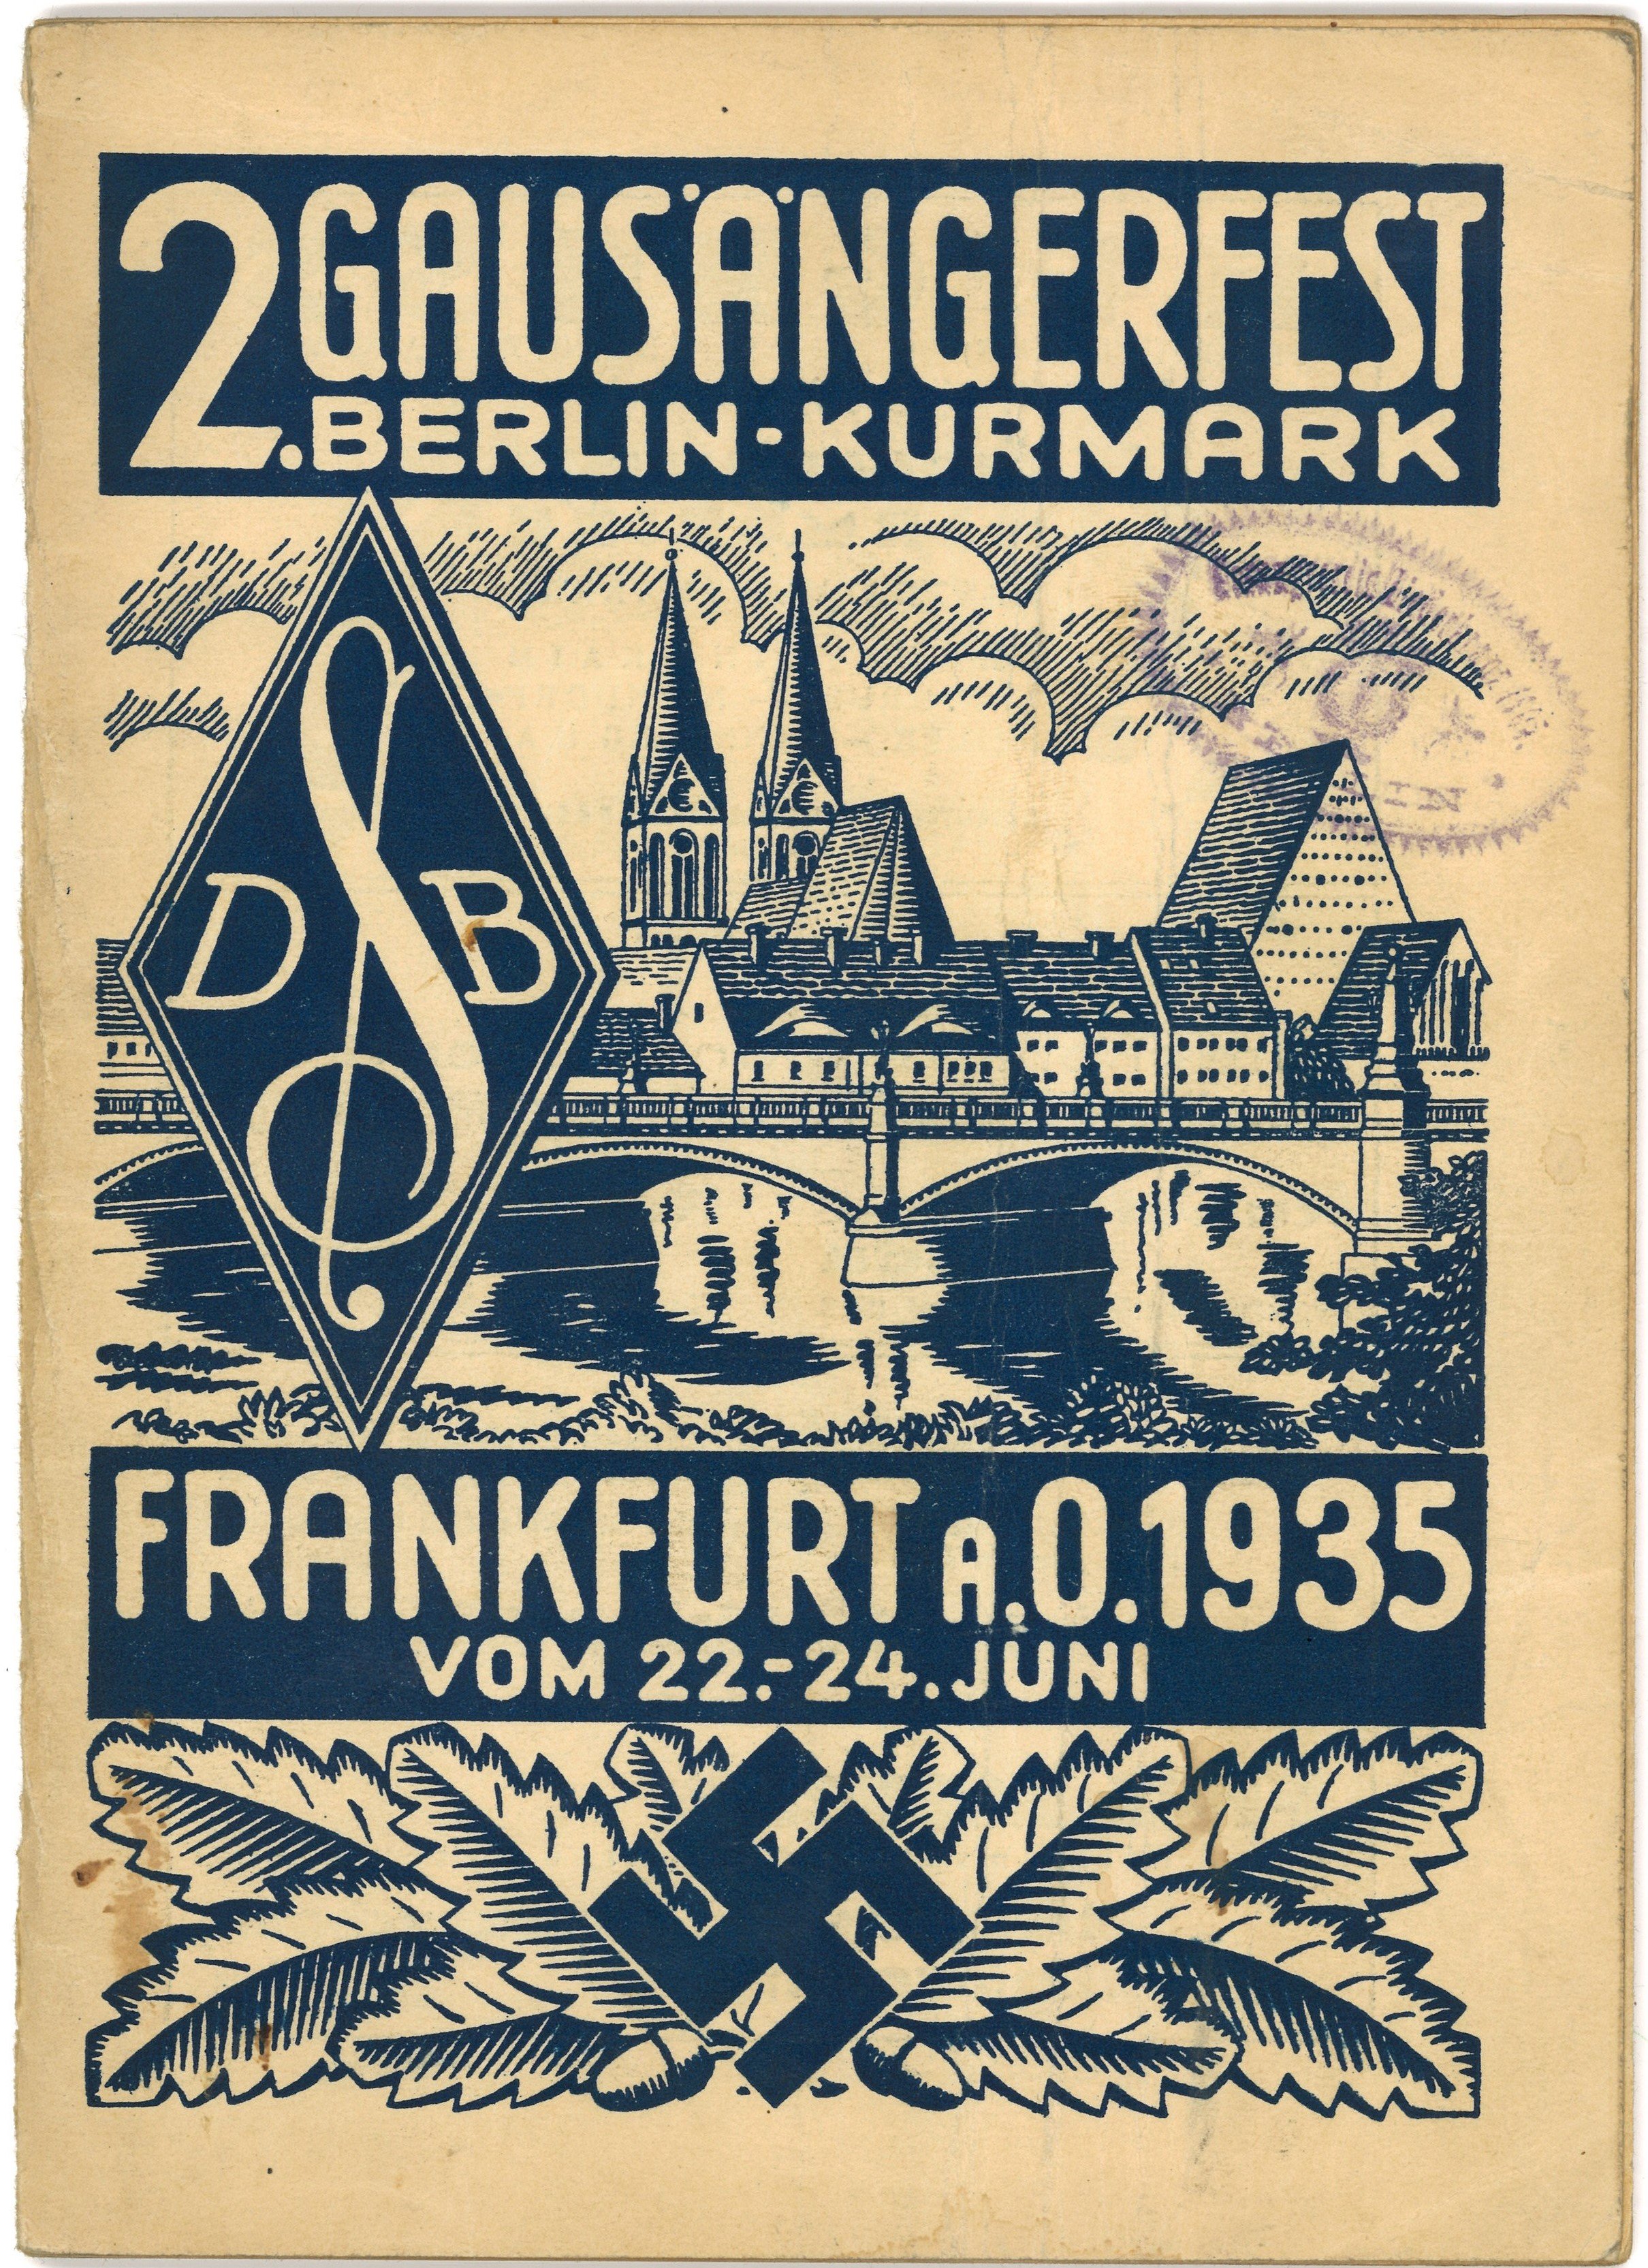 Festbuch zum 2. Gausängerfest des Sängerbundes Berlin-Kurmark in Frankfurt (Oder) 1935 (Landesgeschichtliche Vereinigung für die Mark Brandenburg e.V., Archiv CC BY)